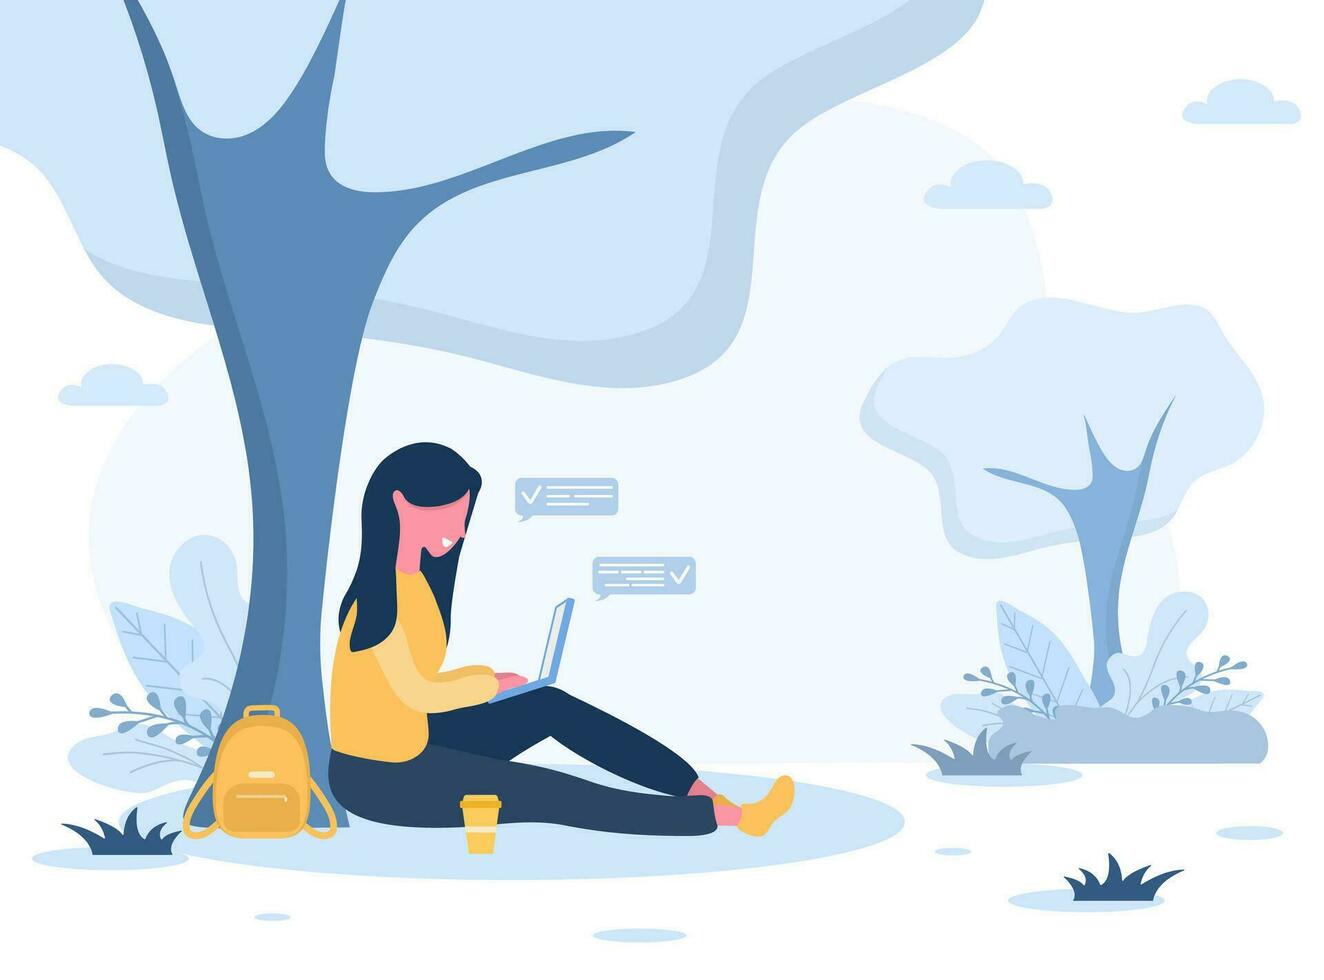 kvinnor frilans. flicka med bärbar dator Sammanträde i parkera under träd. begrepp illustration för arbetssätt utomhus, studerar, kommunikation, friska livsstil. vektor illustration i platt stil.